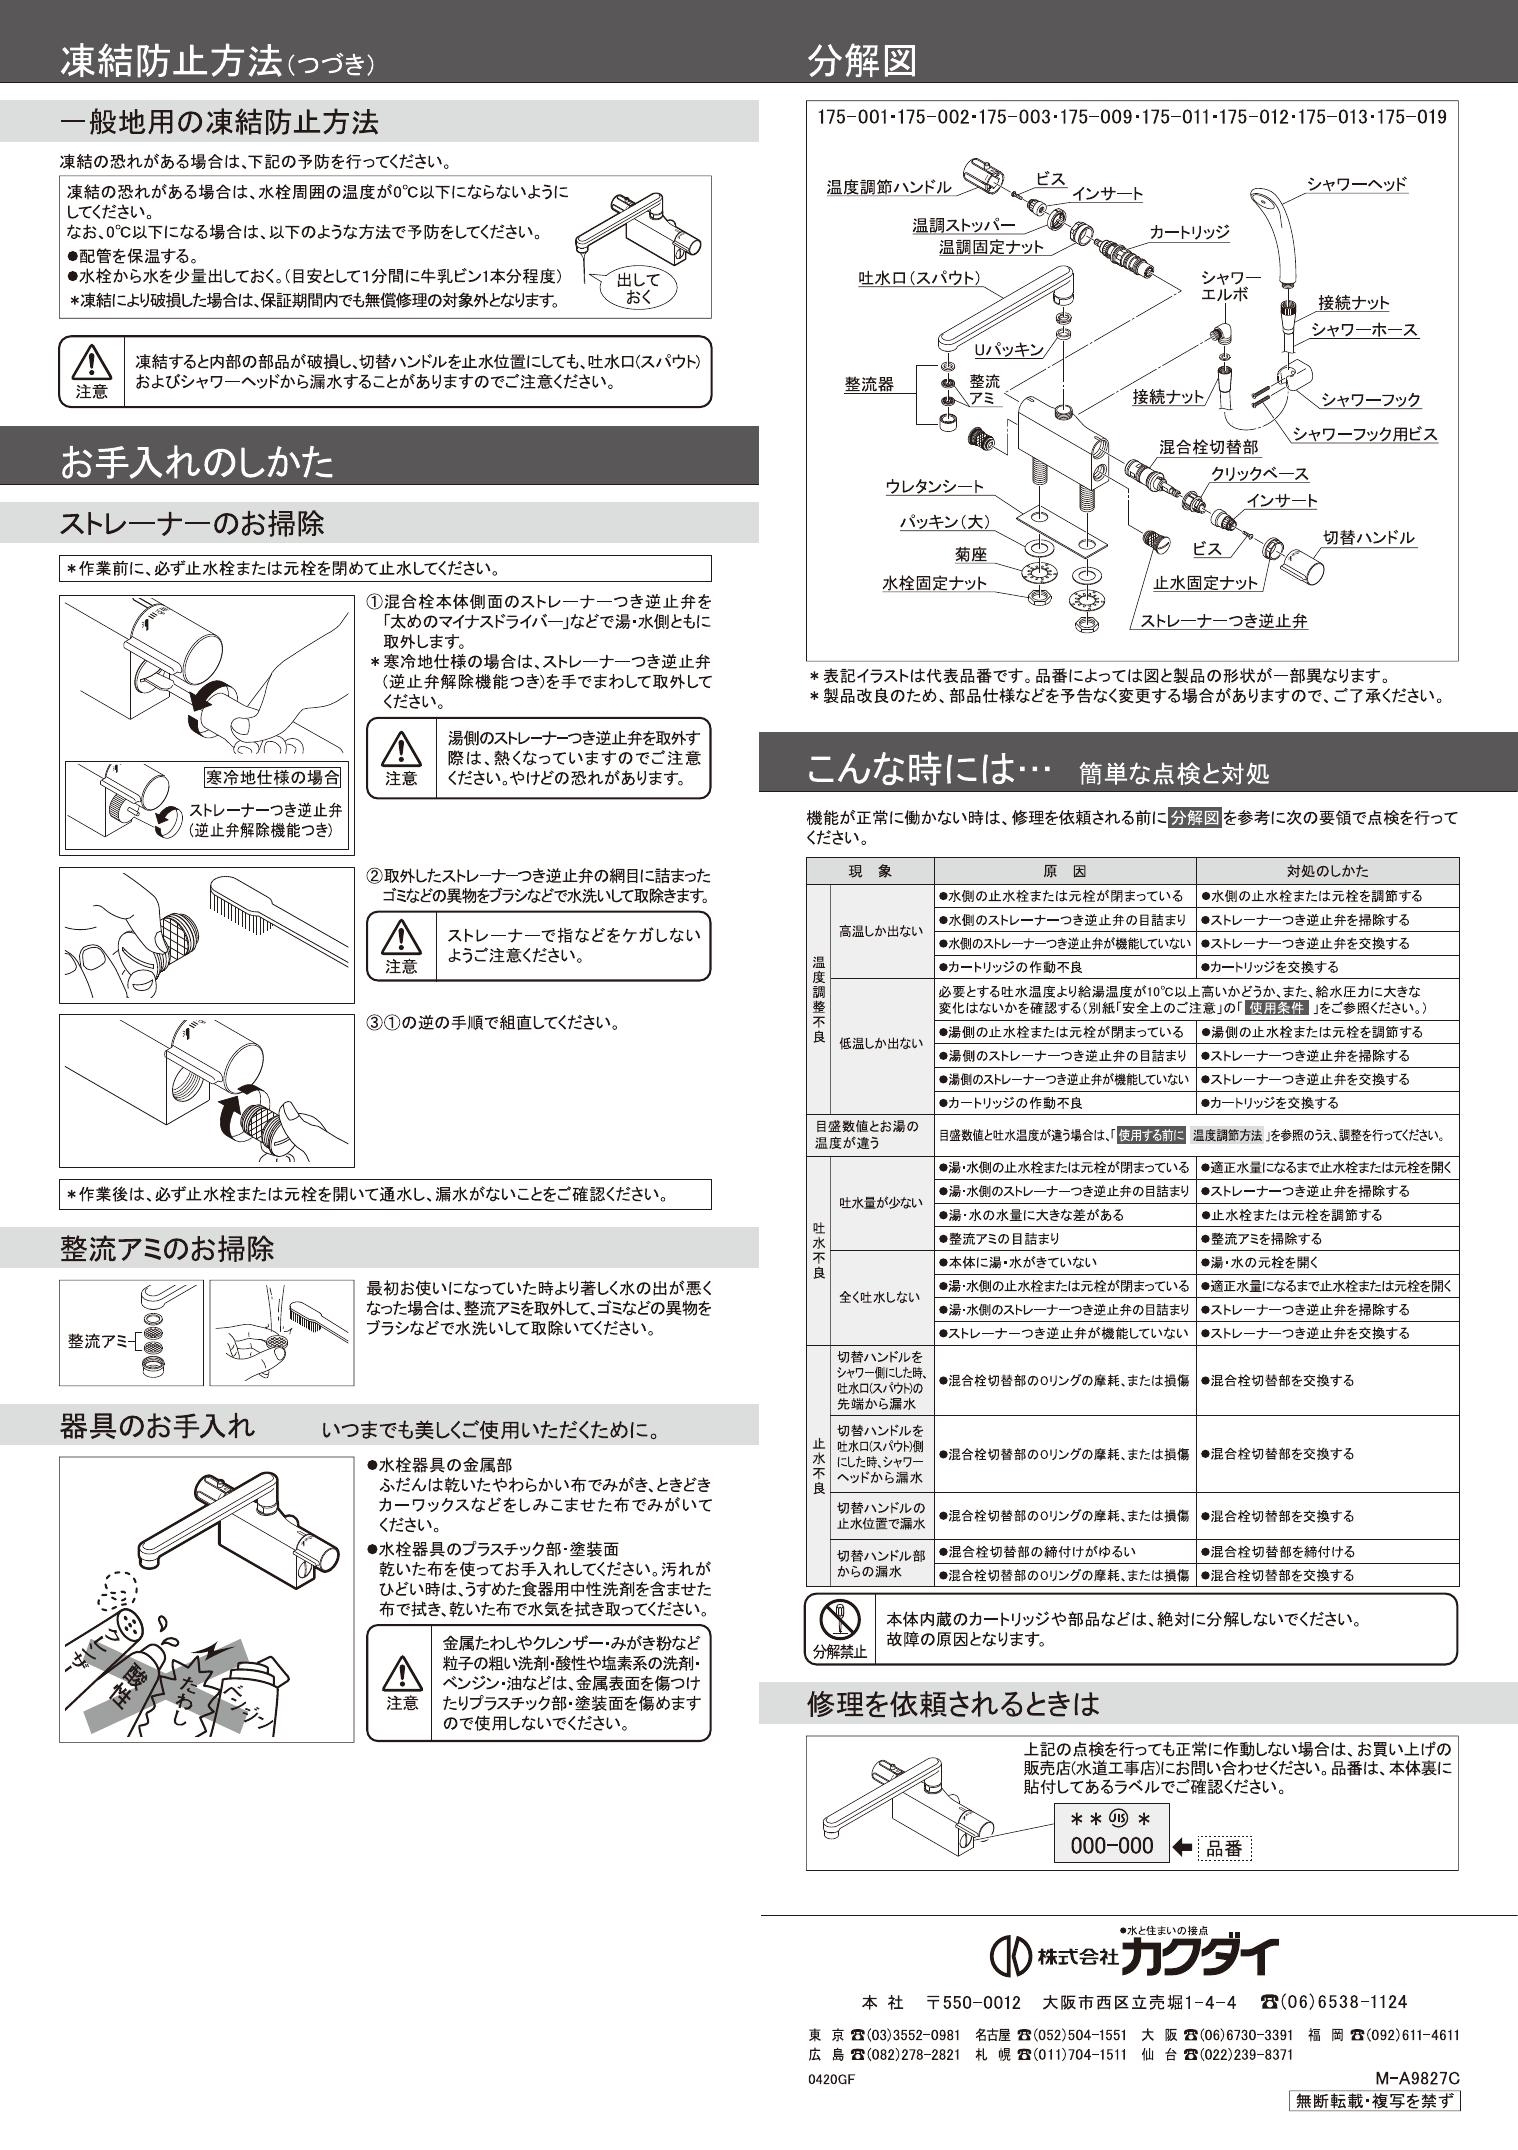 日本限定モデル】 カクダイ サーモスタットシャワー混合栓デッキ 175-019K